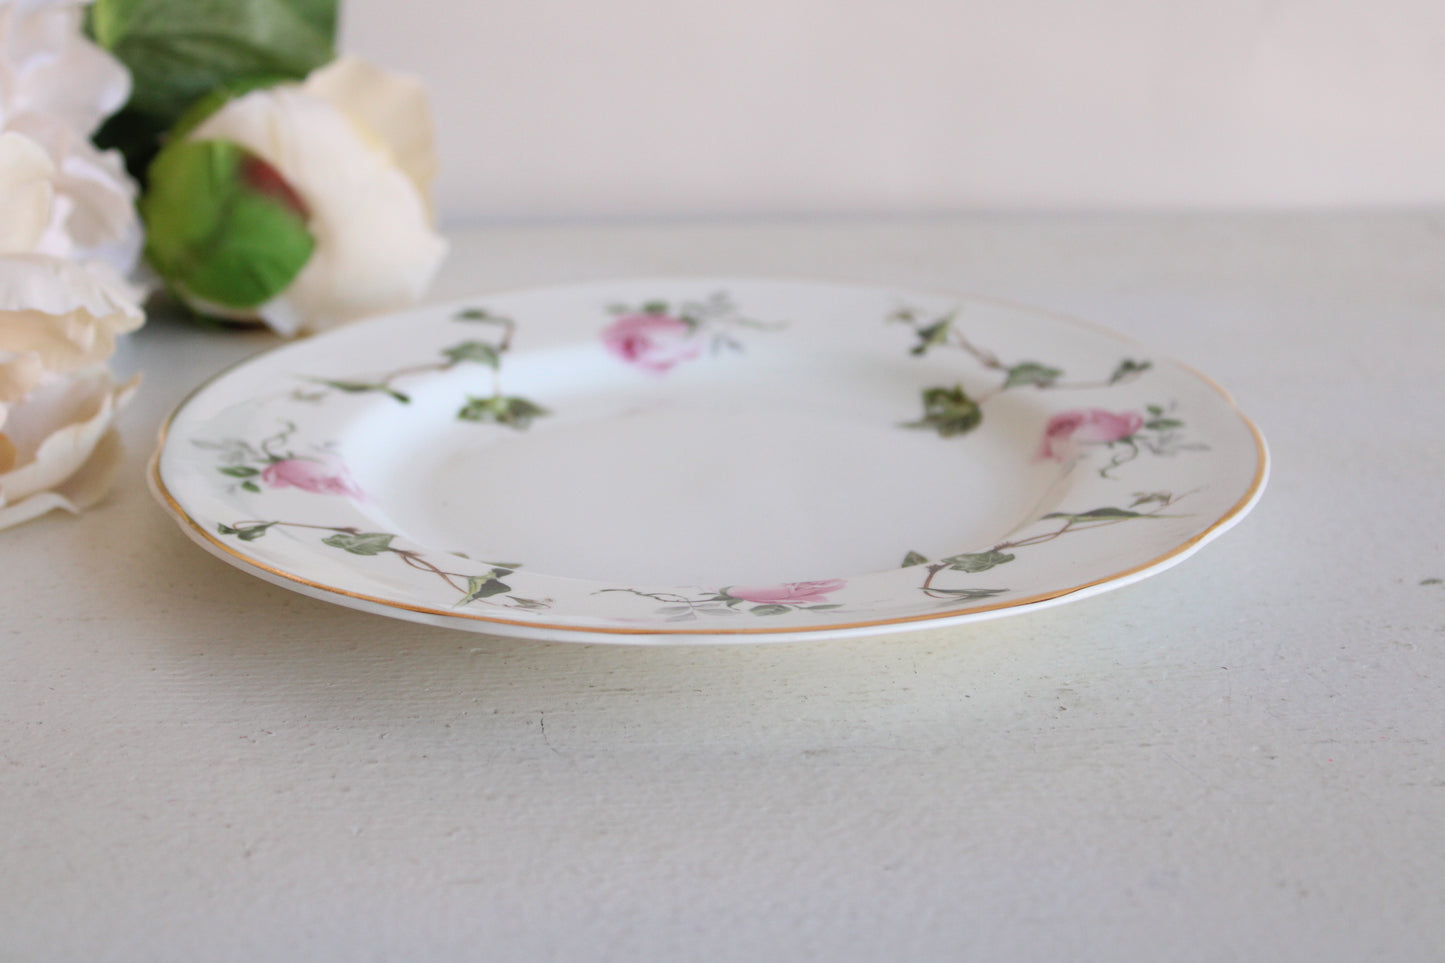 Vintage Crownford Ivy Rose Salad or Appetizer Plate